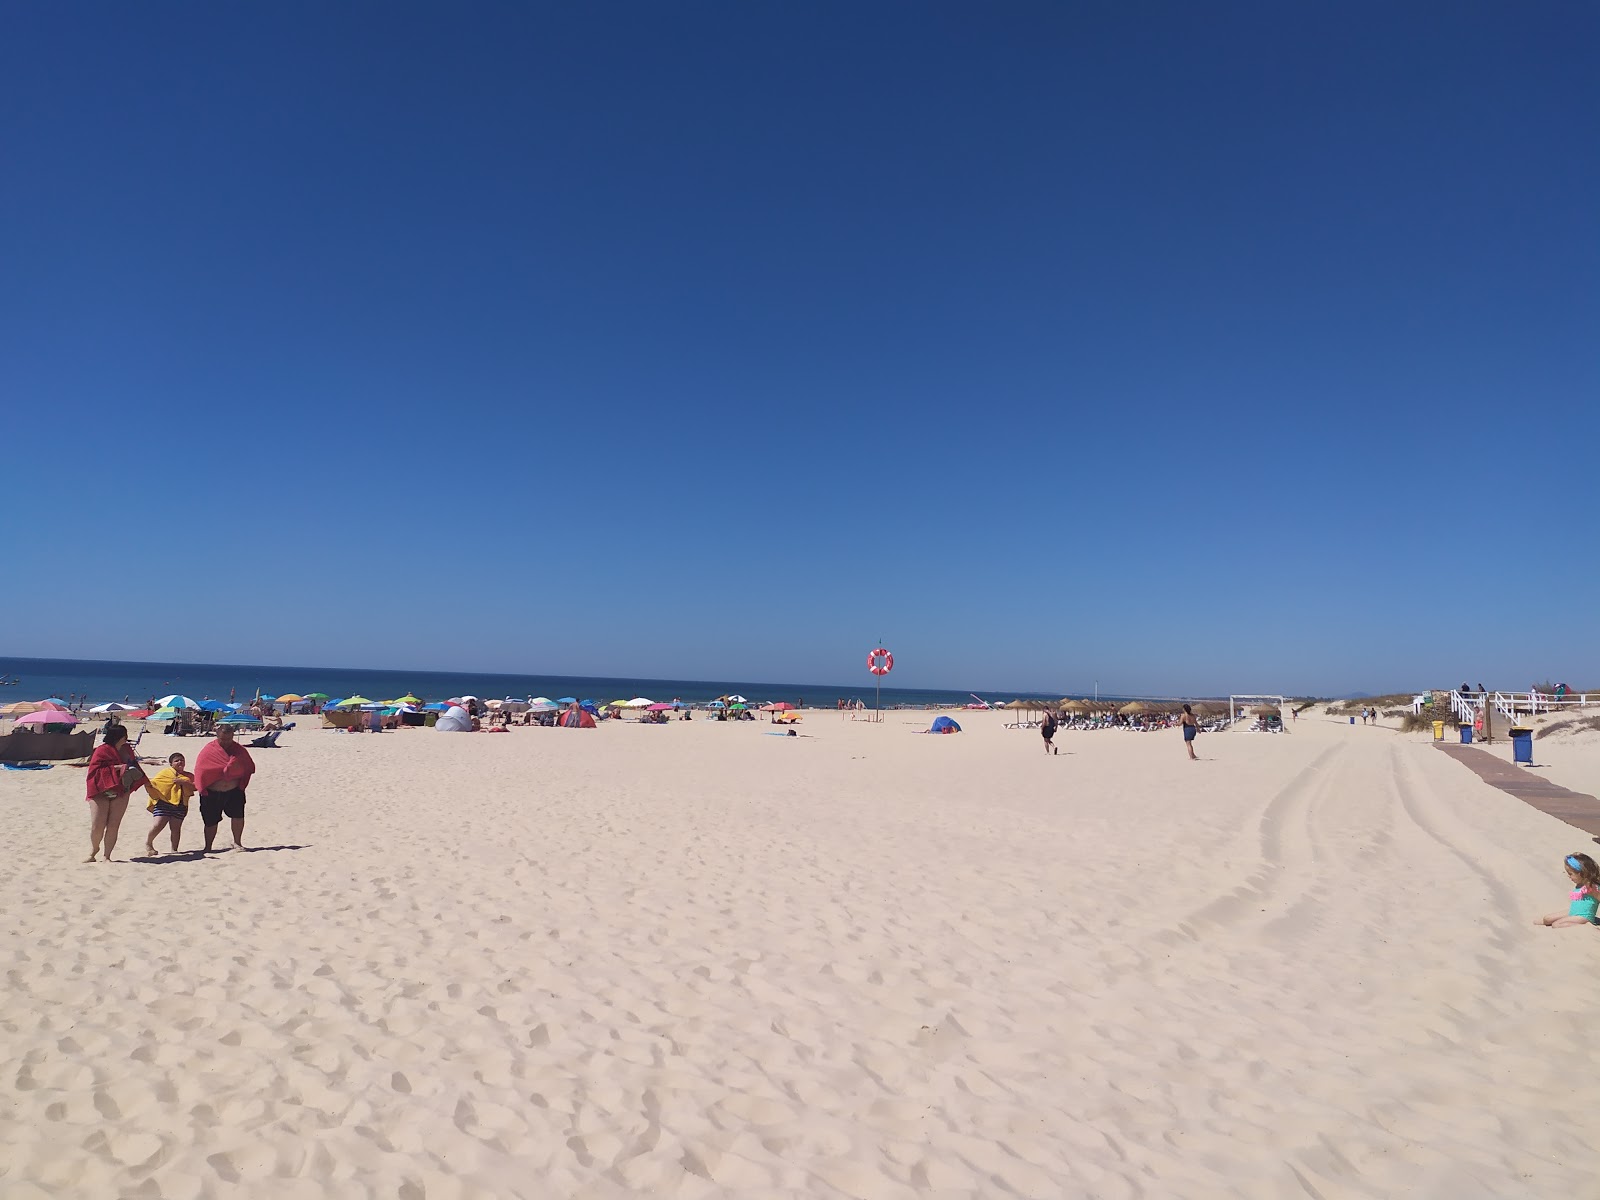 Fotografie cu Playa Casita Azul - locul popular printre cunoscătorii de relaxare